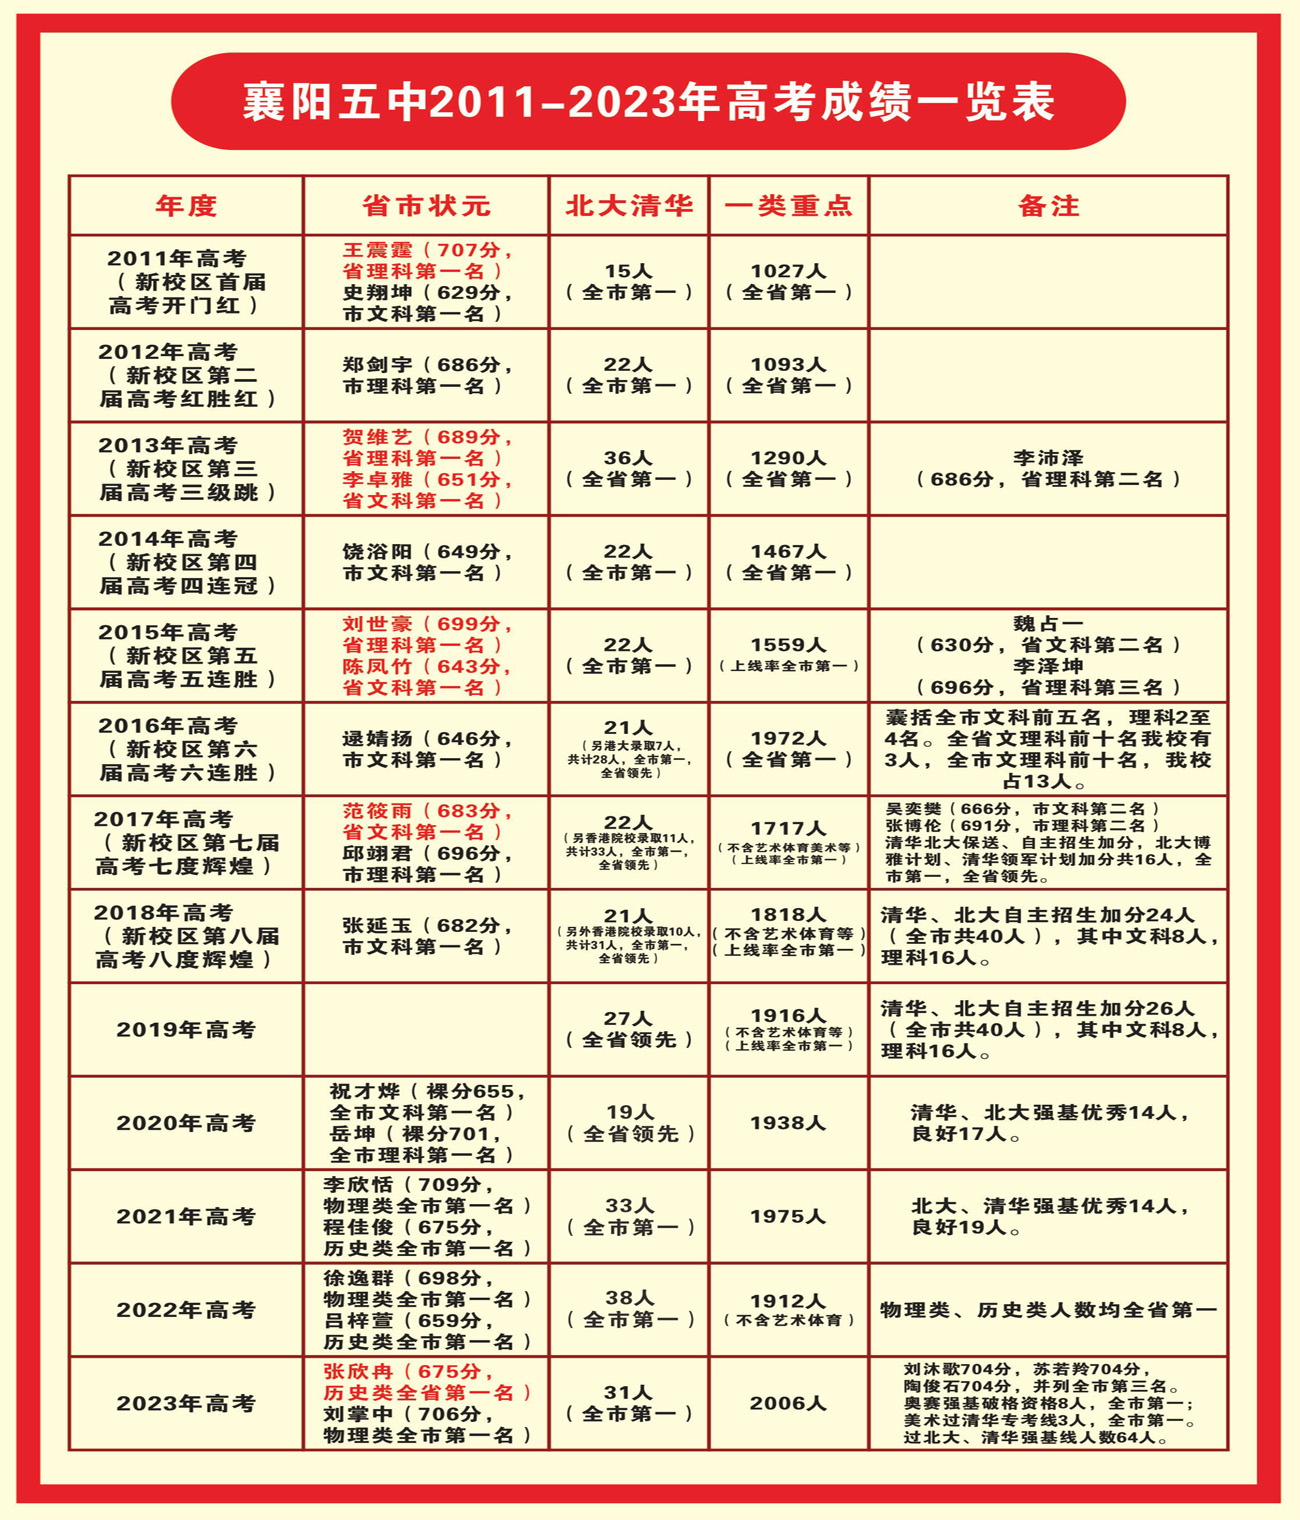 襄阳五中2011-2023年高考成绩一览表(发布).jpg